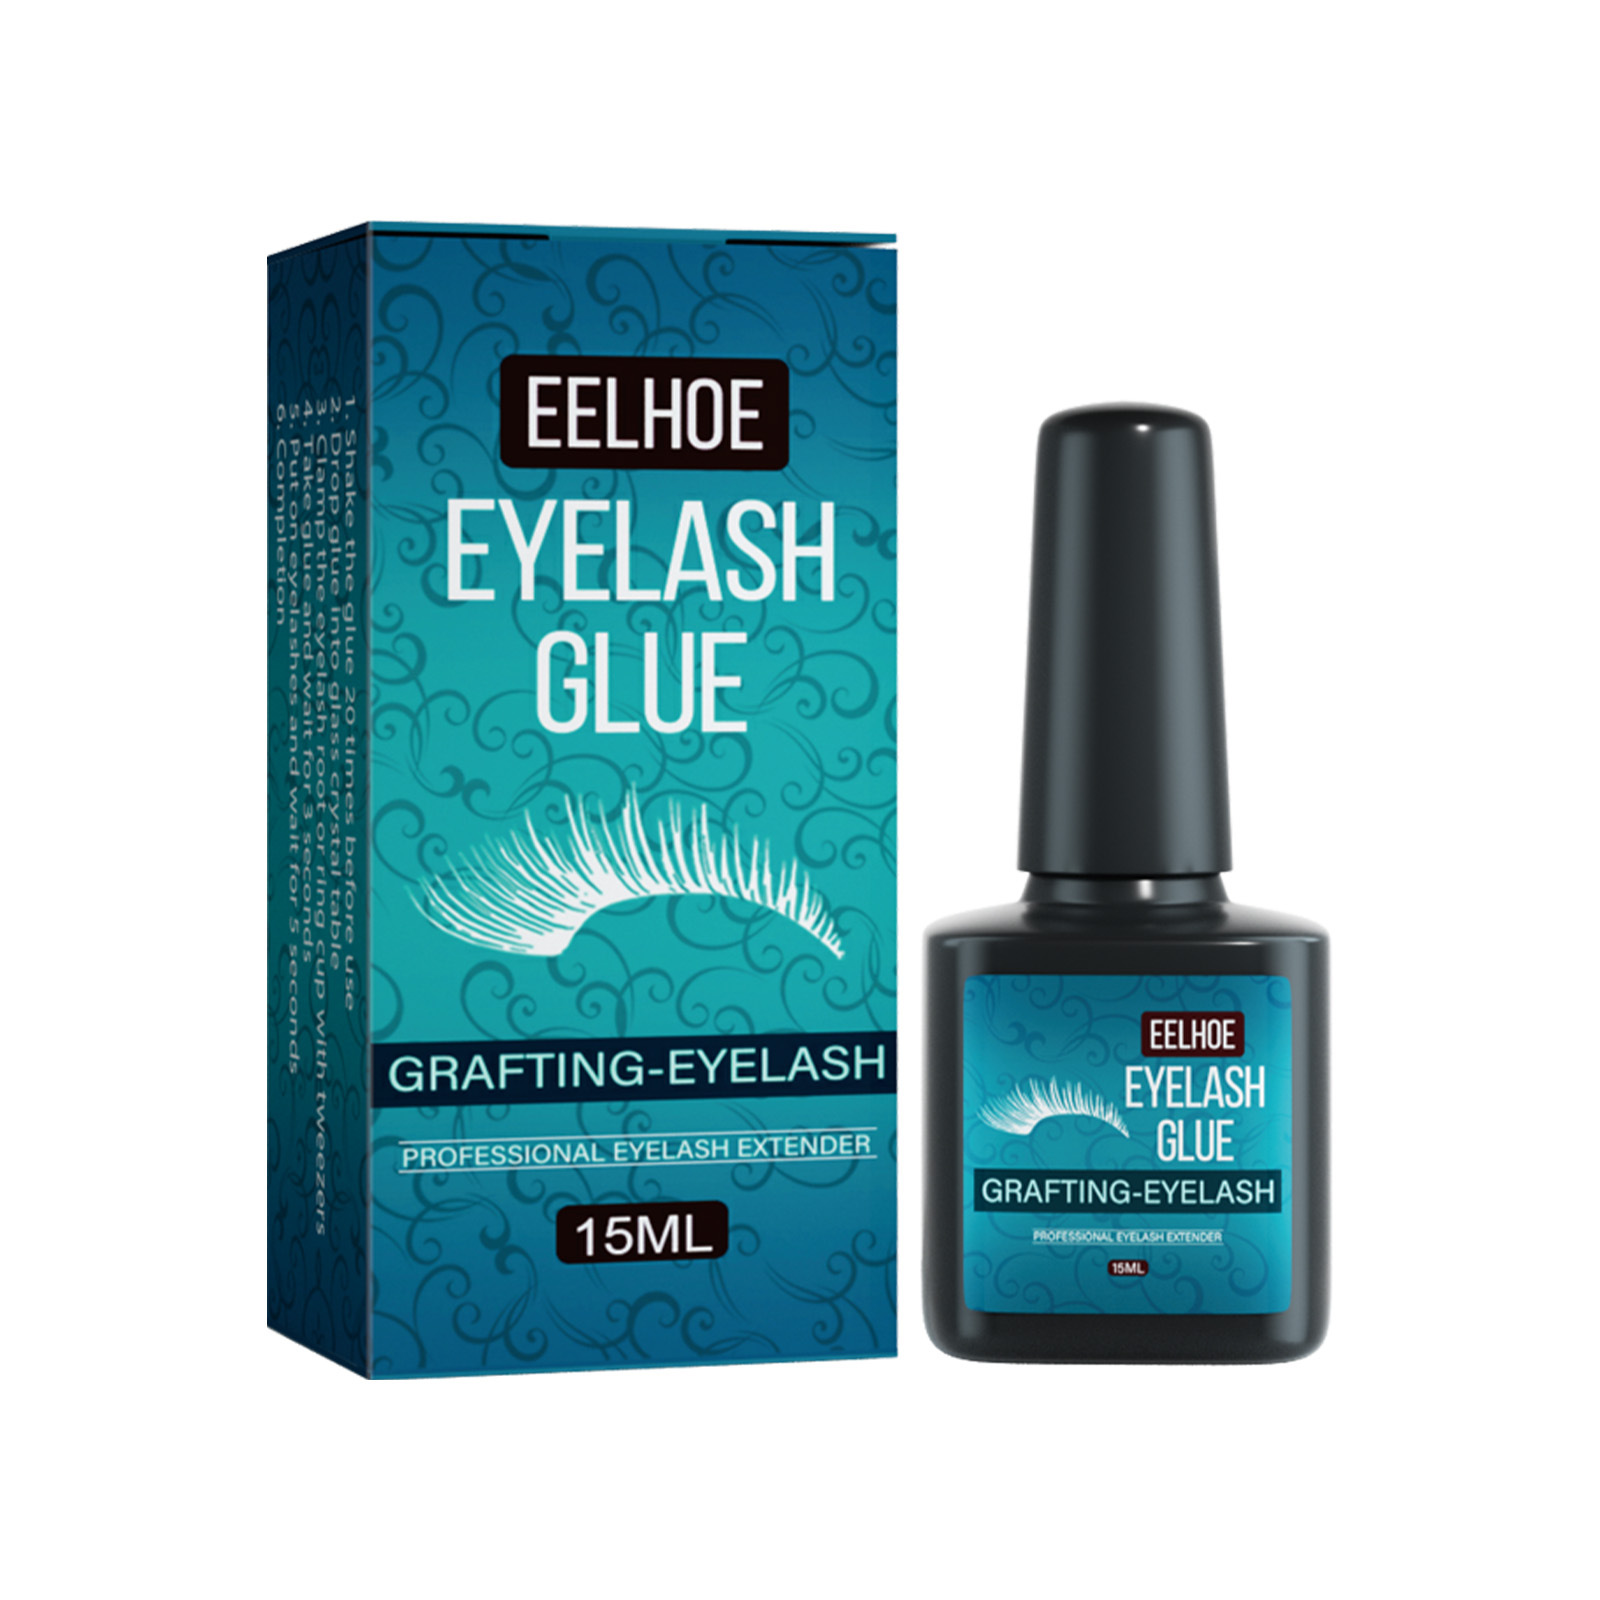 Eelhoe Eyelash Grafting Glue Mild Low Sensitivity Quick-Drying Eyelash Glue Waterproof No Glue Mark Beauty Eyelash Glue